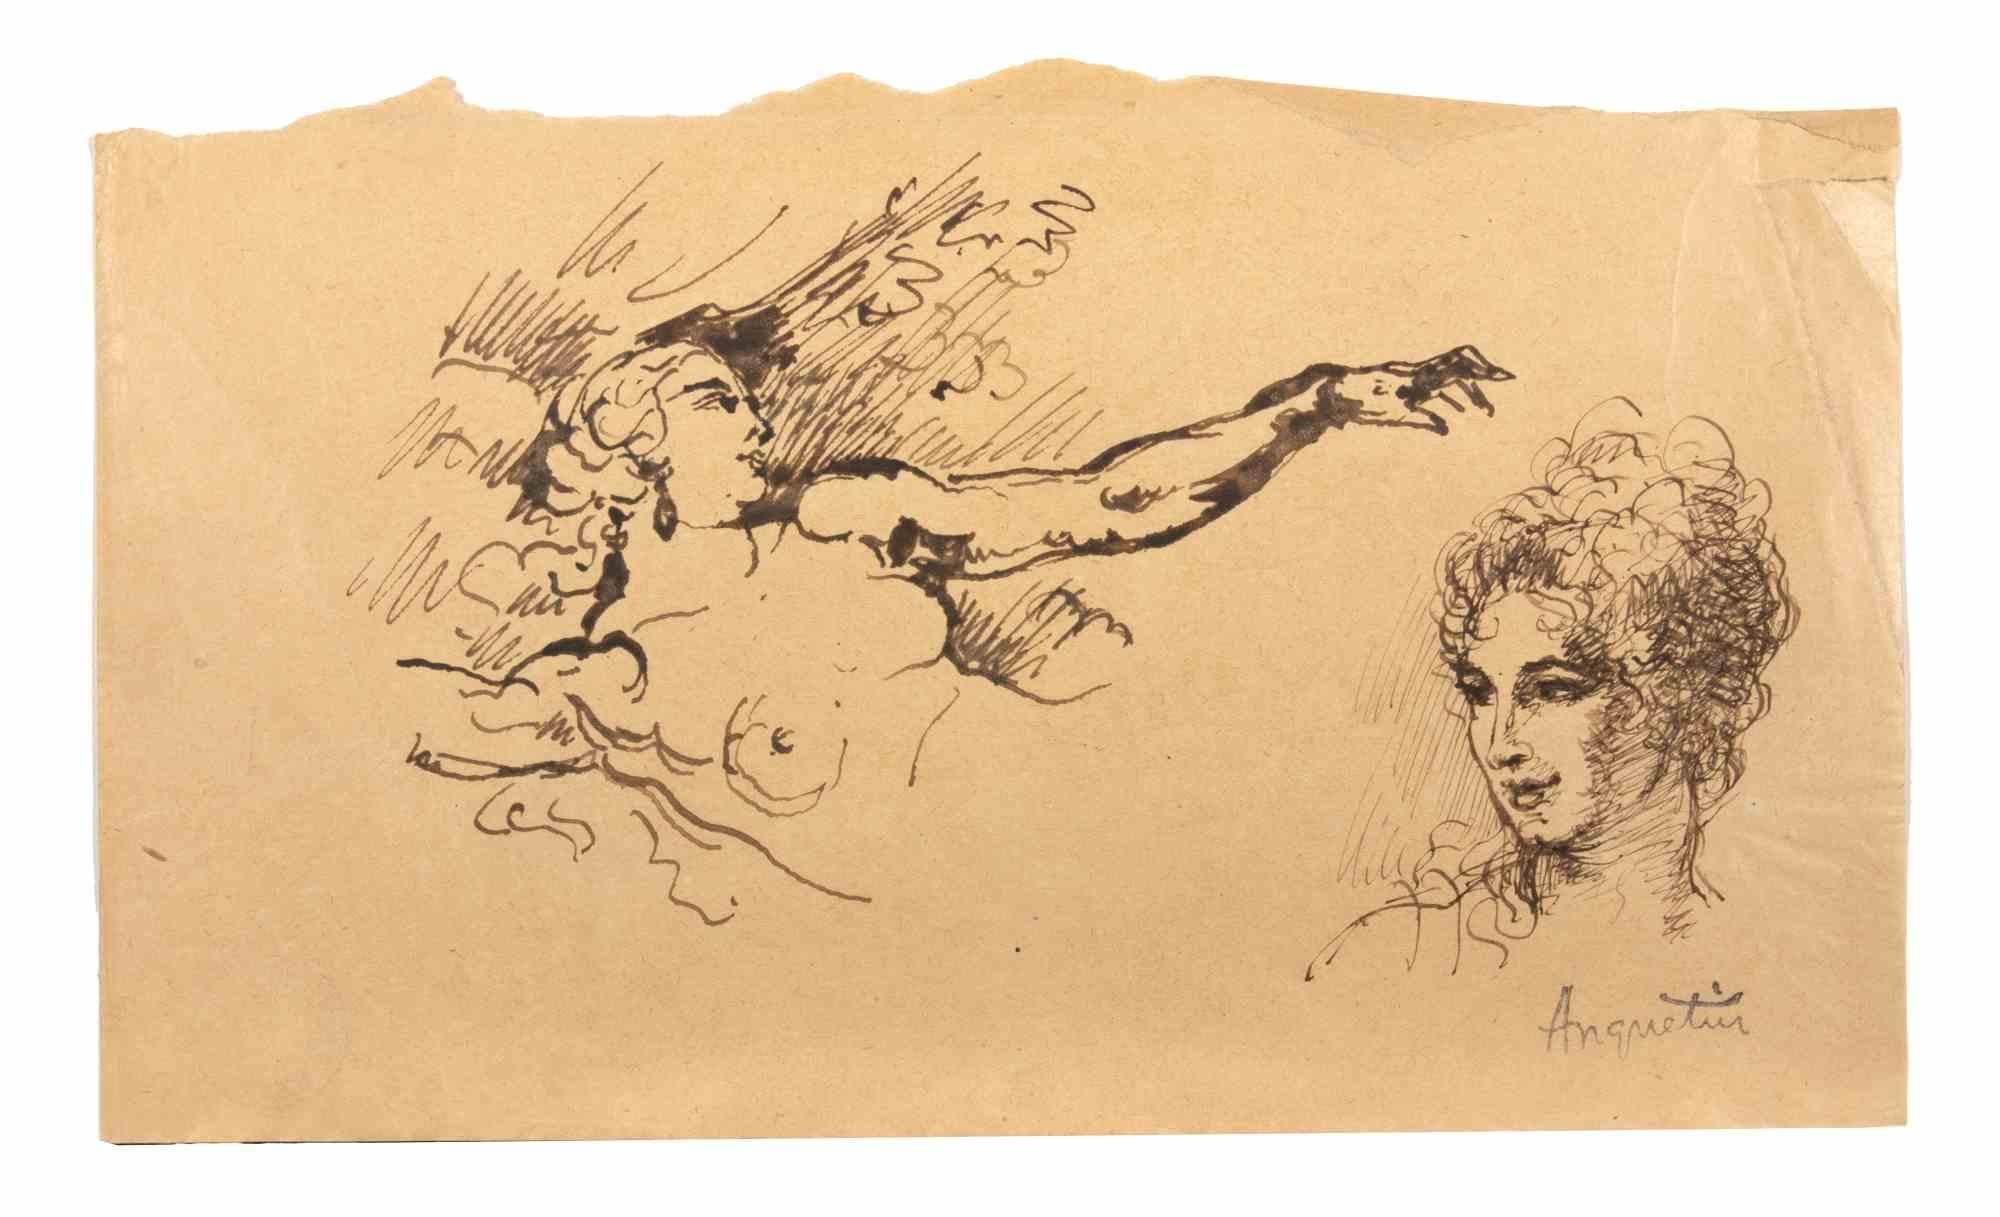 Akt und Porträt ist eine Tuschezeichnung auf Papier aus dem frühen 20. Jahrhundert von Louis Anquetin (1861-1932).

Handsigniert auf der Unterseite.

Guter Zustand.

Louis Émile Anquetin (26. Januar 1861 - 19. August 1932) war ein französischer